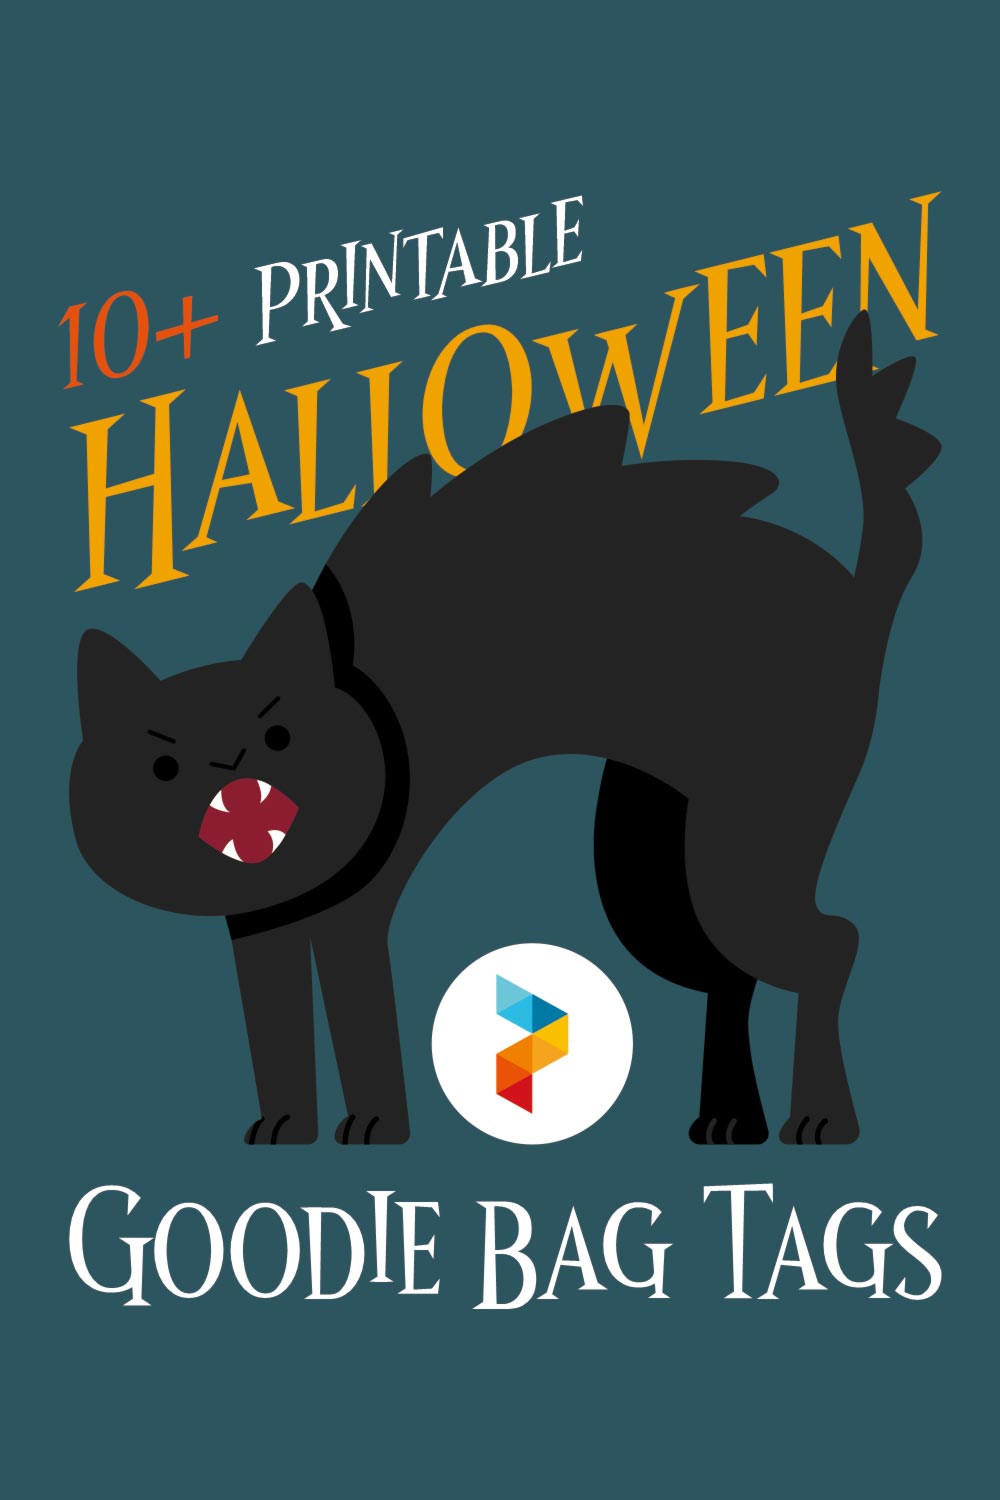 Printable Halloween Goodie Bag Tags